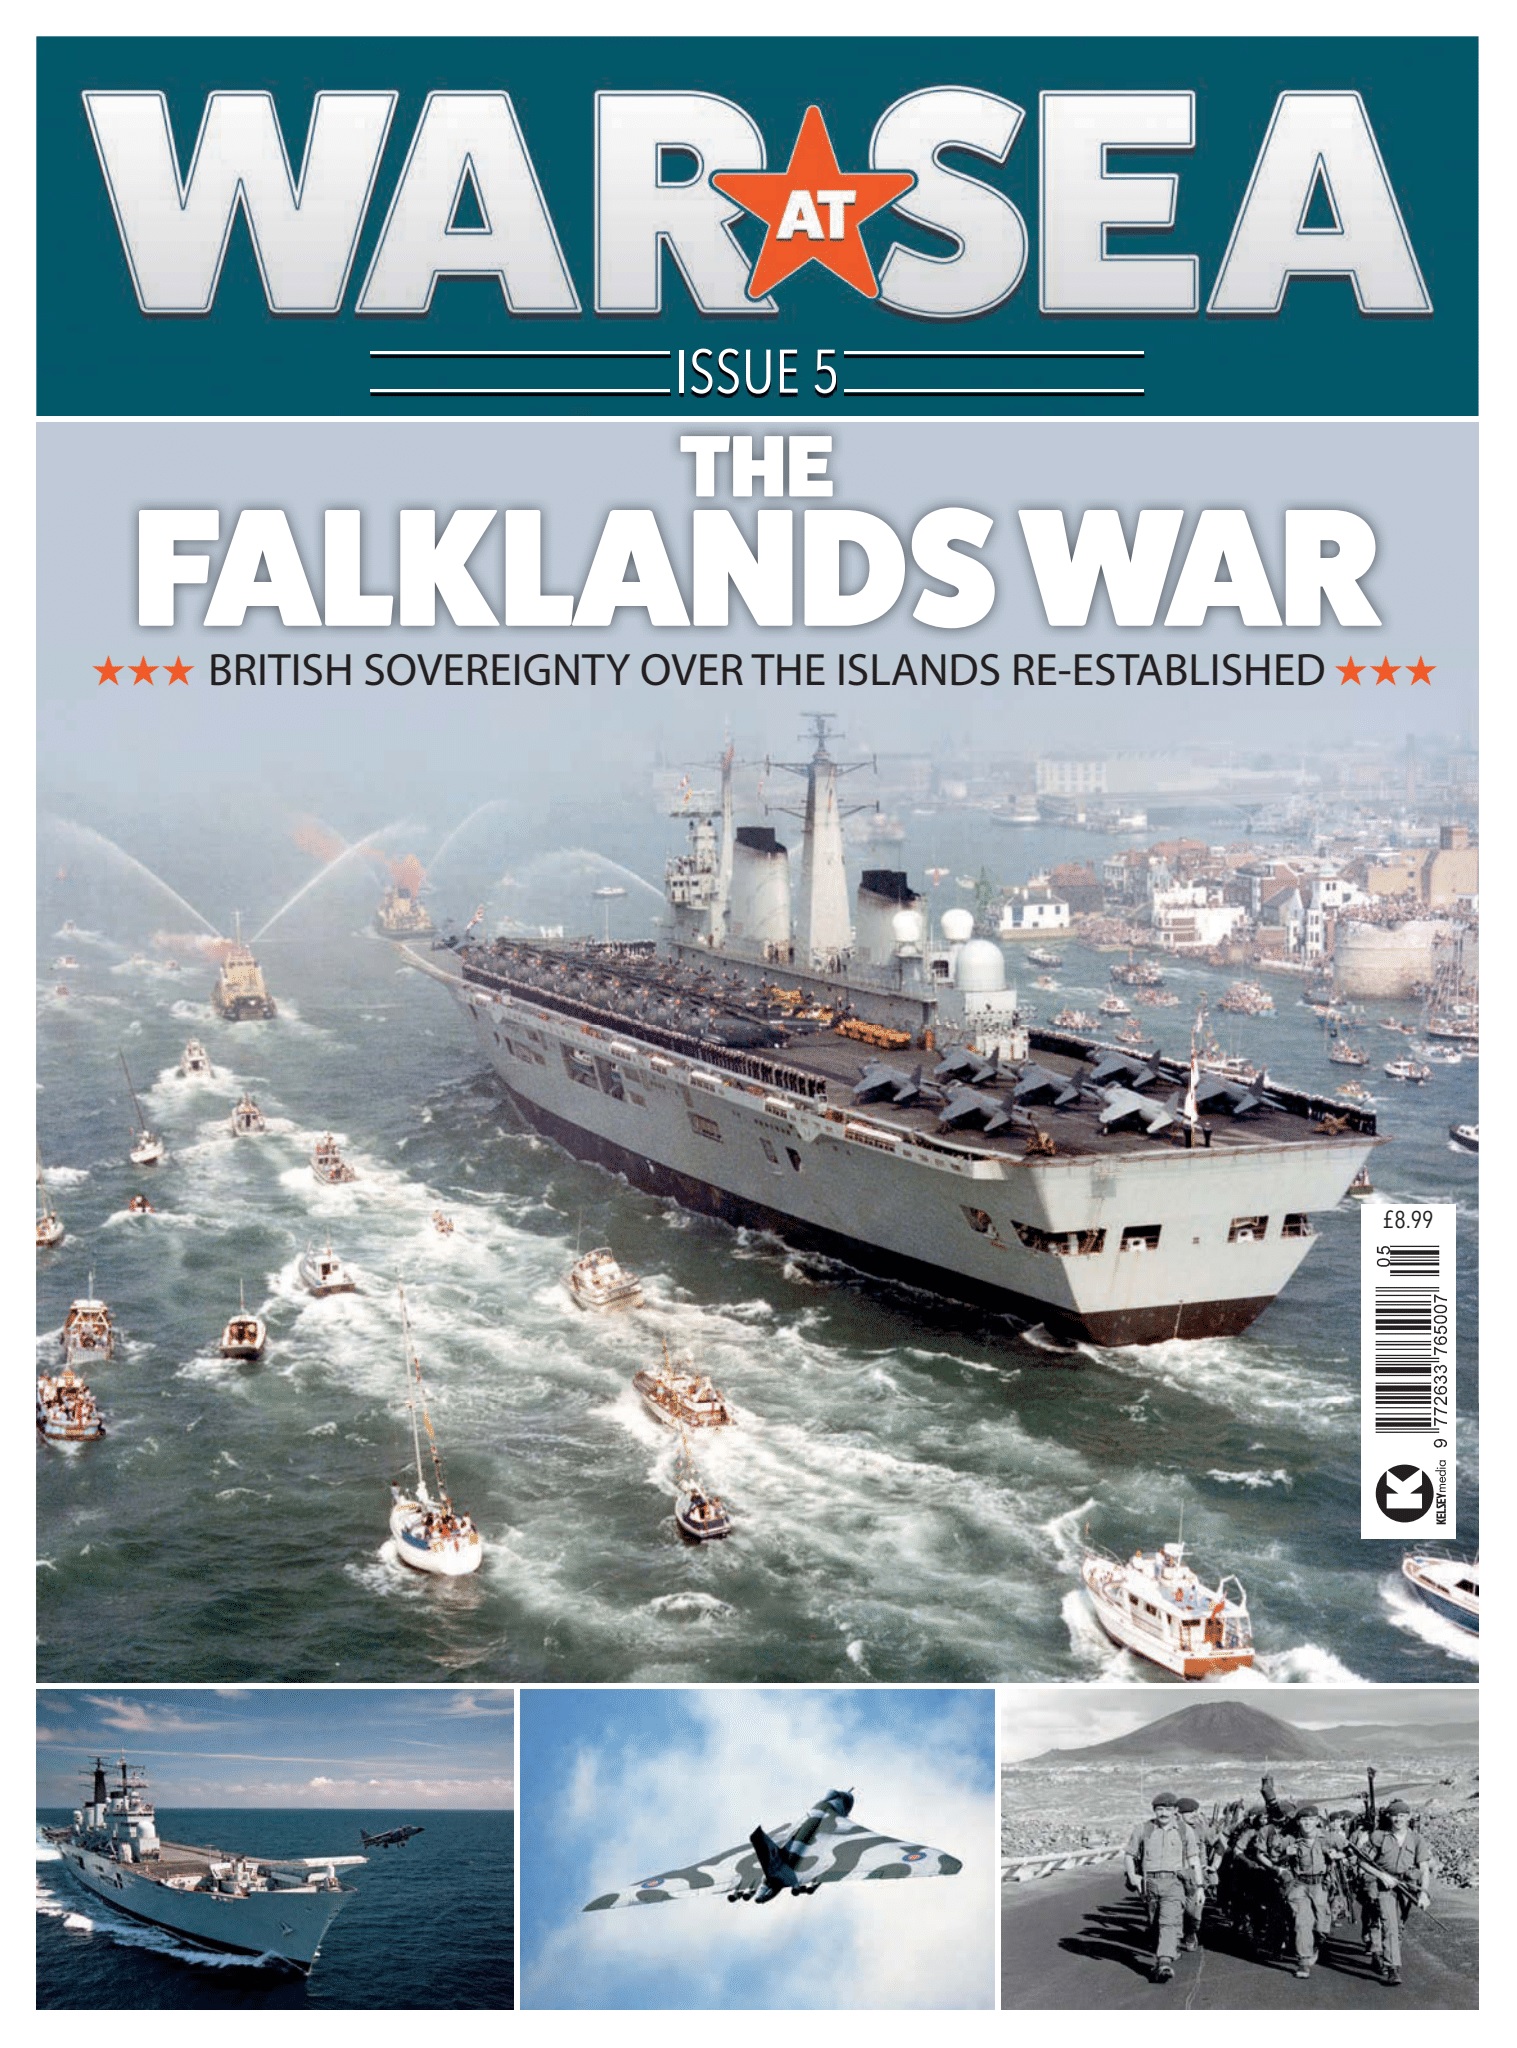 War at Sea #5 - Falkland War at Sea